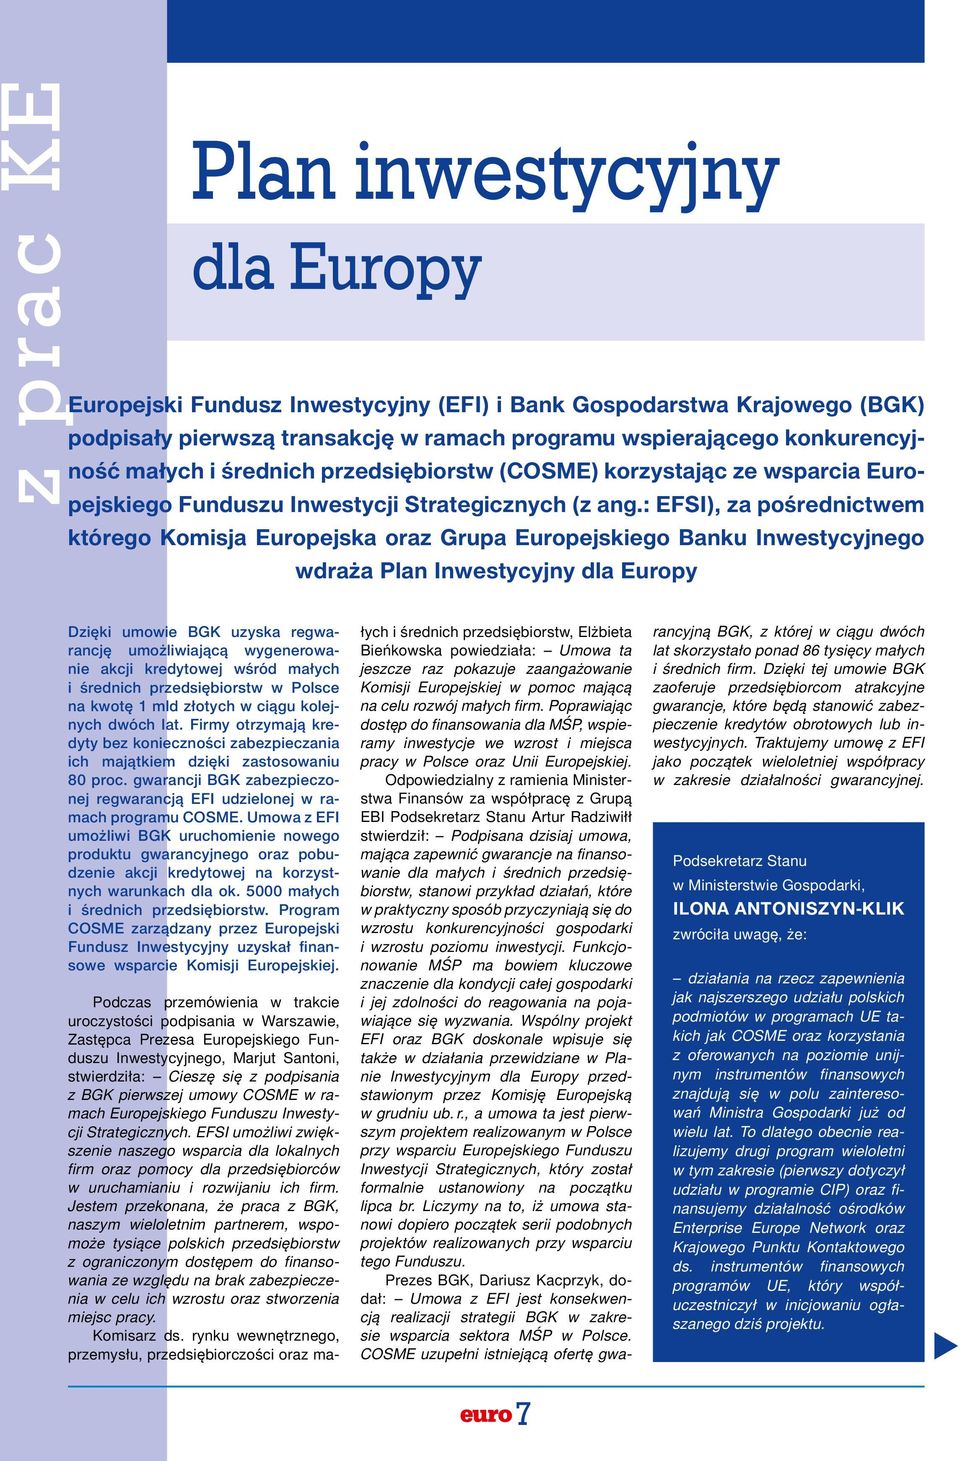 : EFSI), za pośrednictwem którego Komisja Europejska oraz Grupa Europejskiego Banku Inwestycyjnego wdraża Plan Inwestycyjny dla Europy Dzięki umowie BGK uzyska regwarancję umożliwiającą wygenerowanie